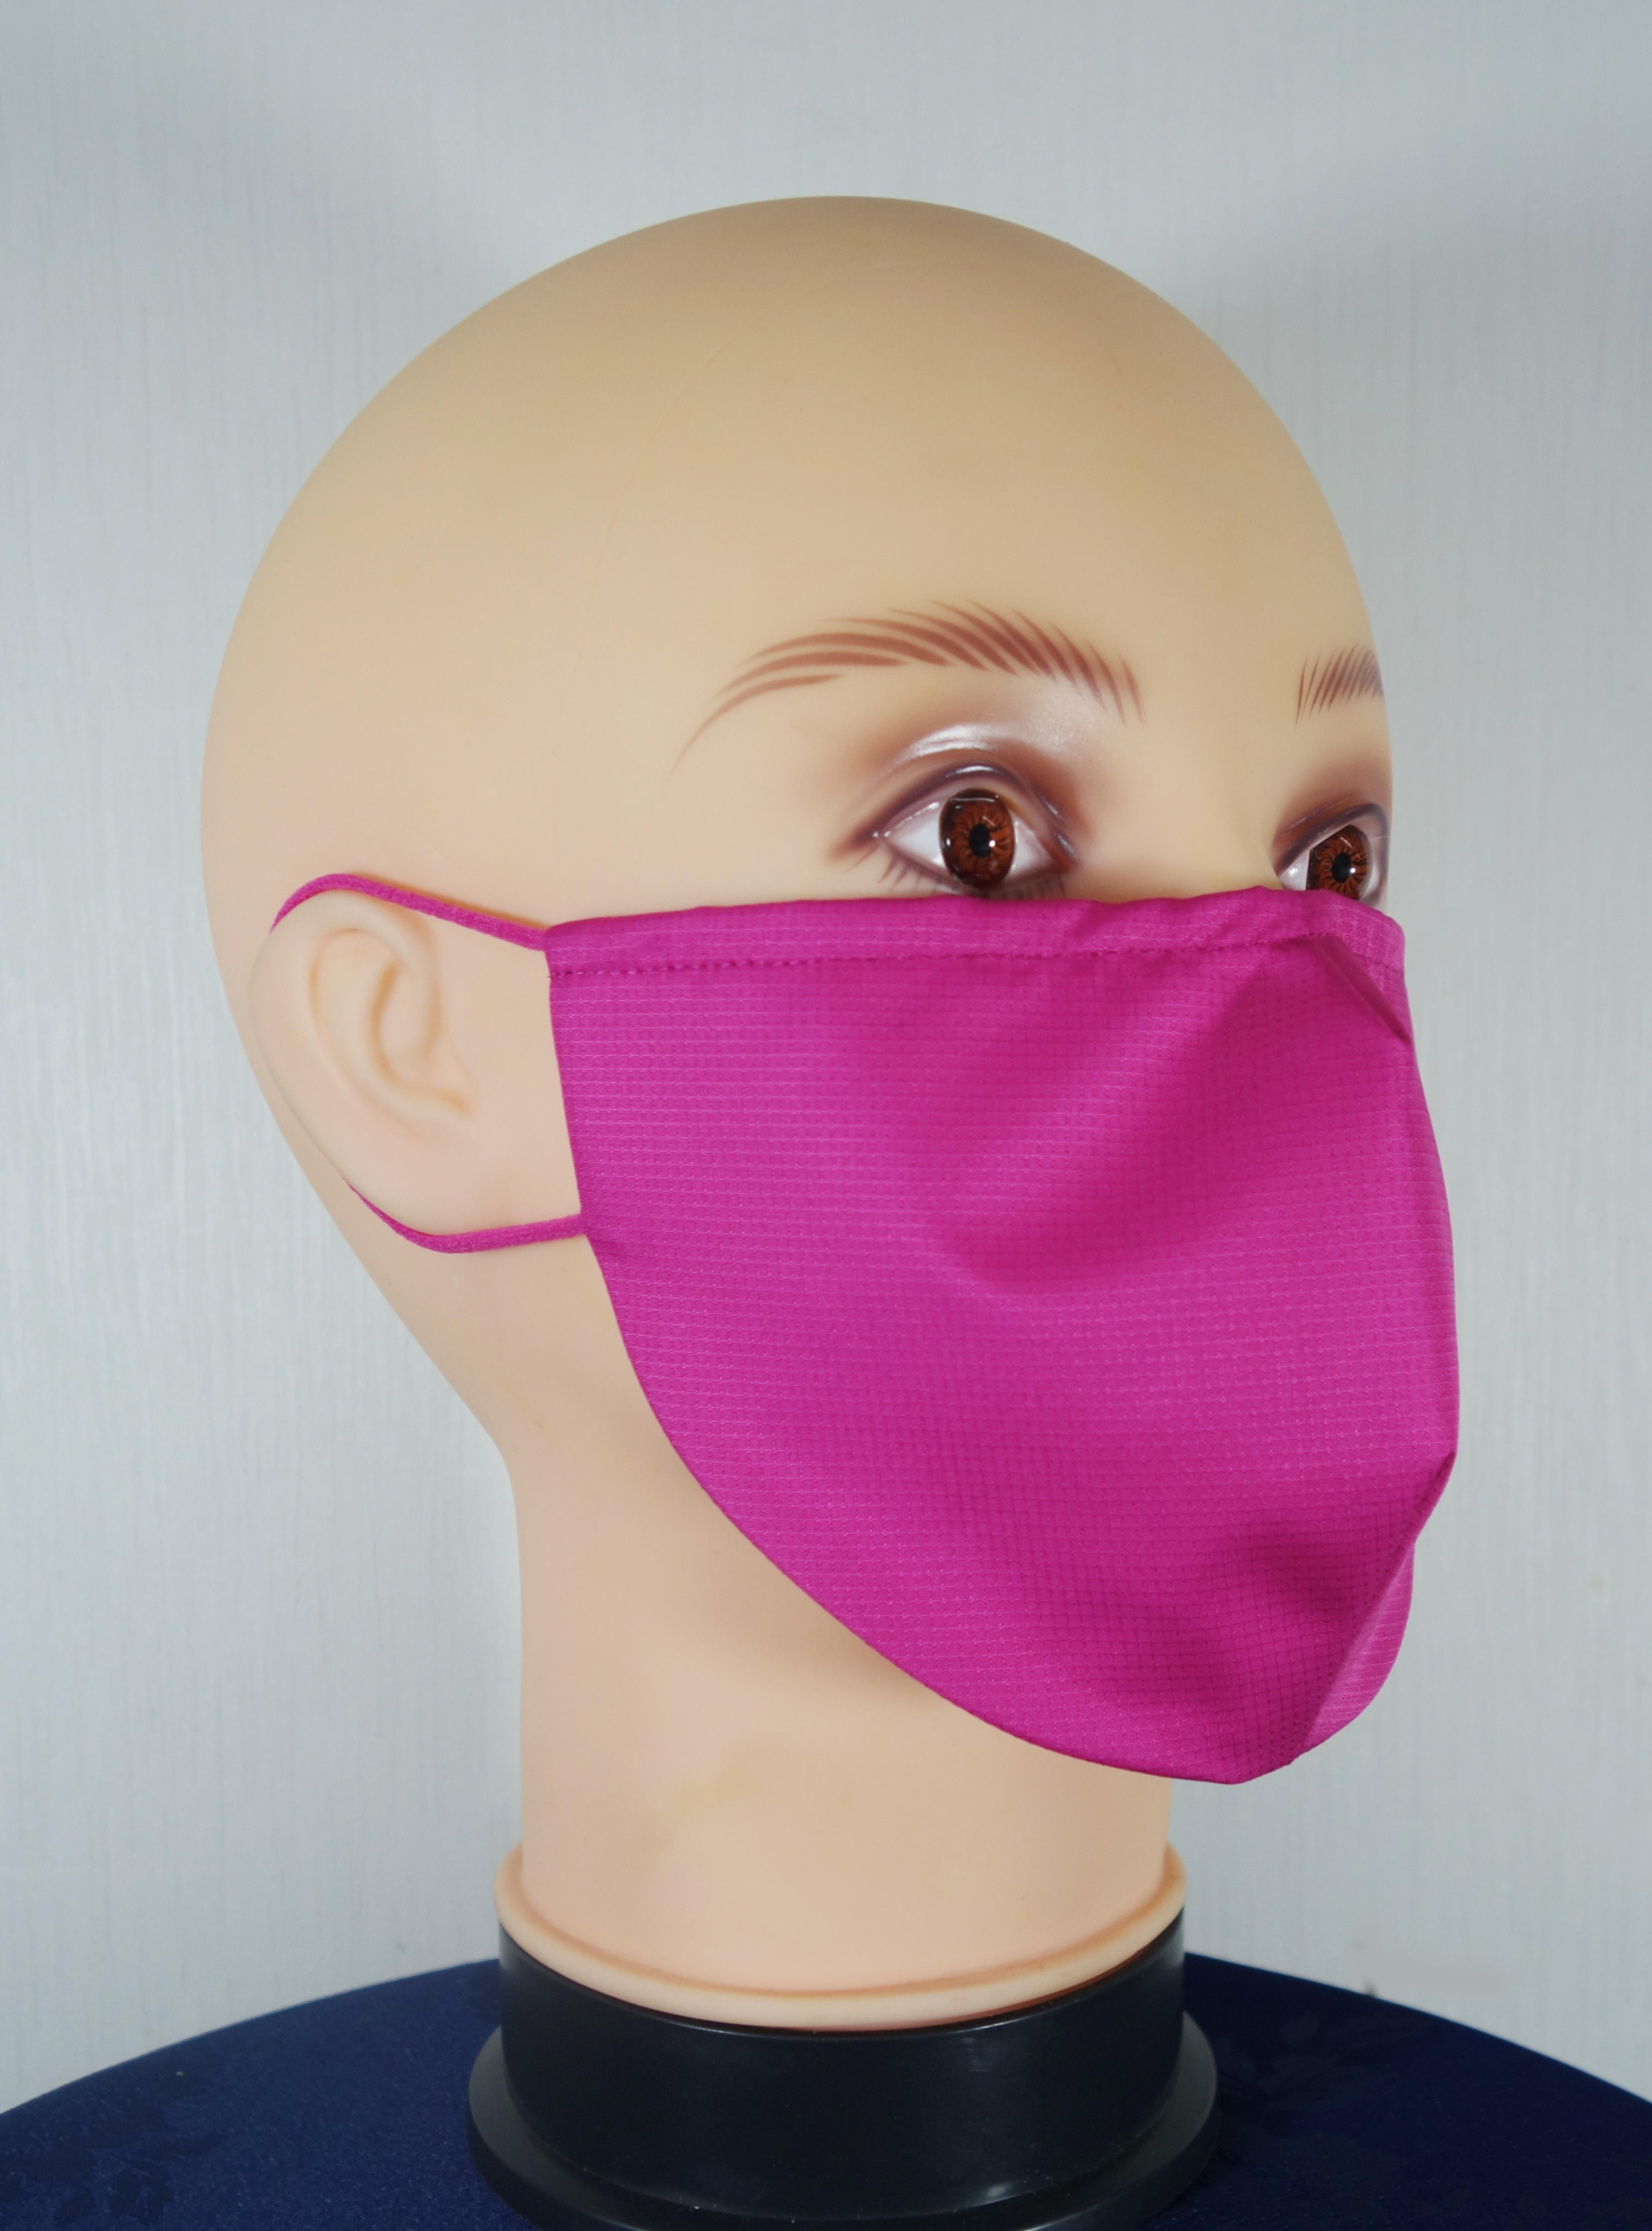 マスク熱中症対策の決定版！
「らくなマスクEX」6月14日に新発売